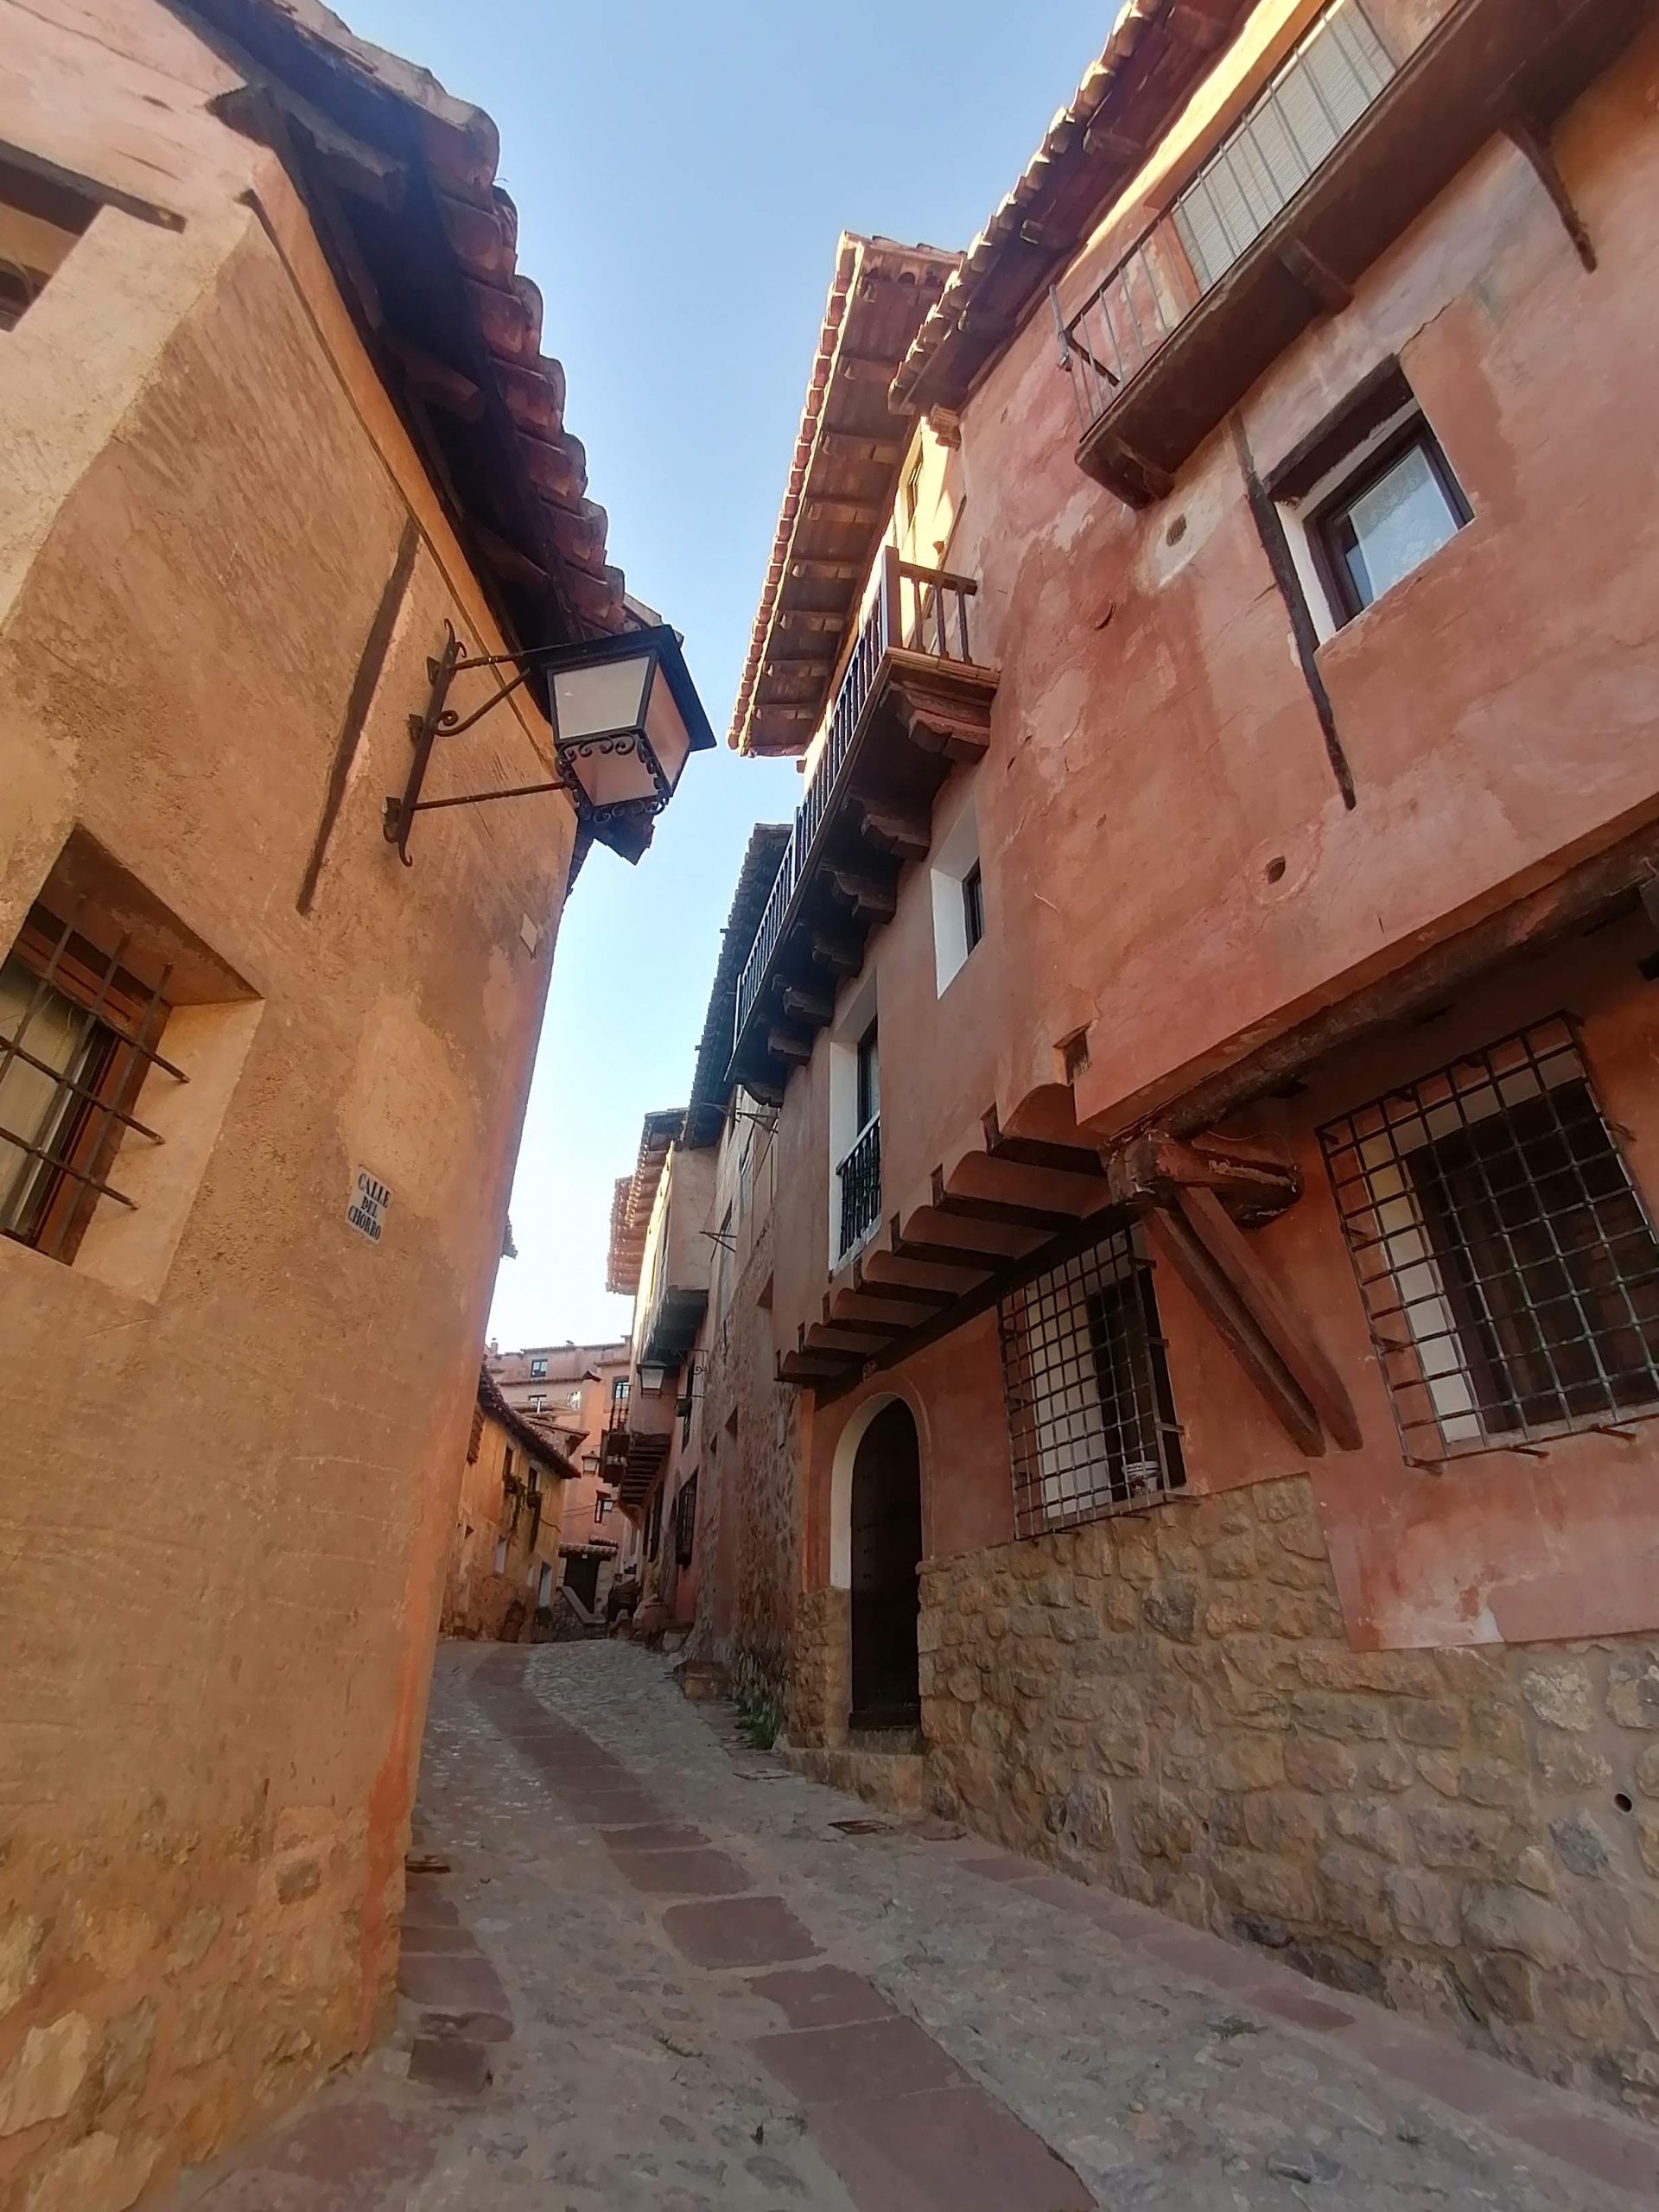 Private Guide in Albarracin